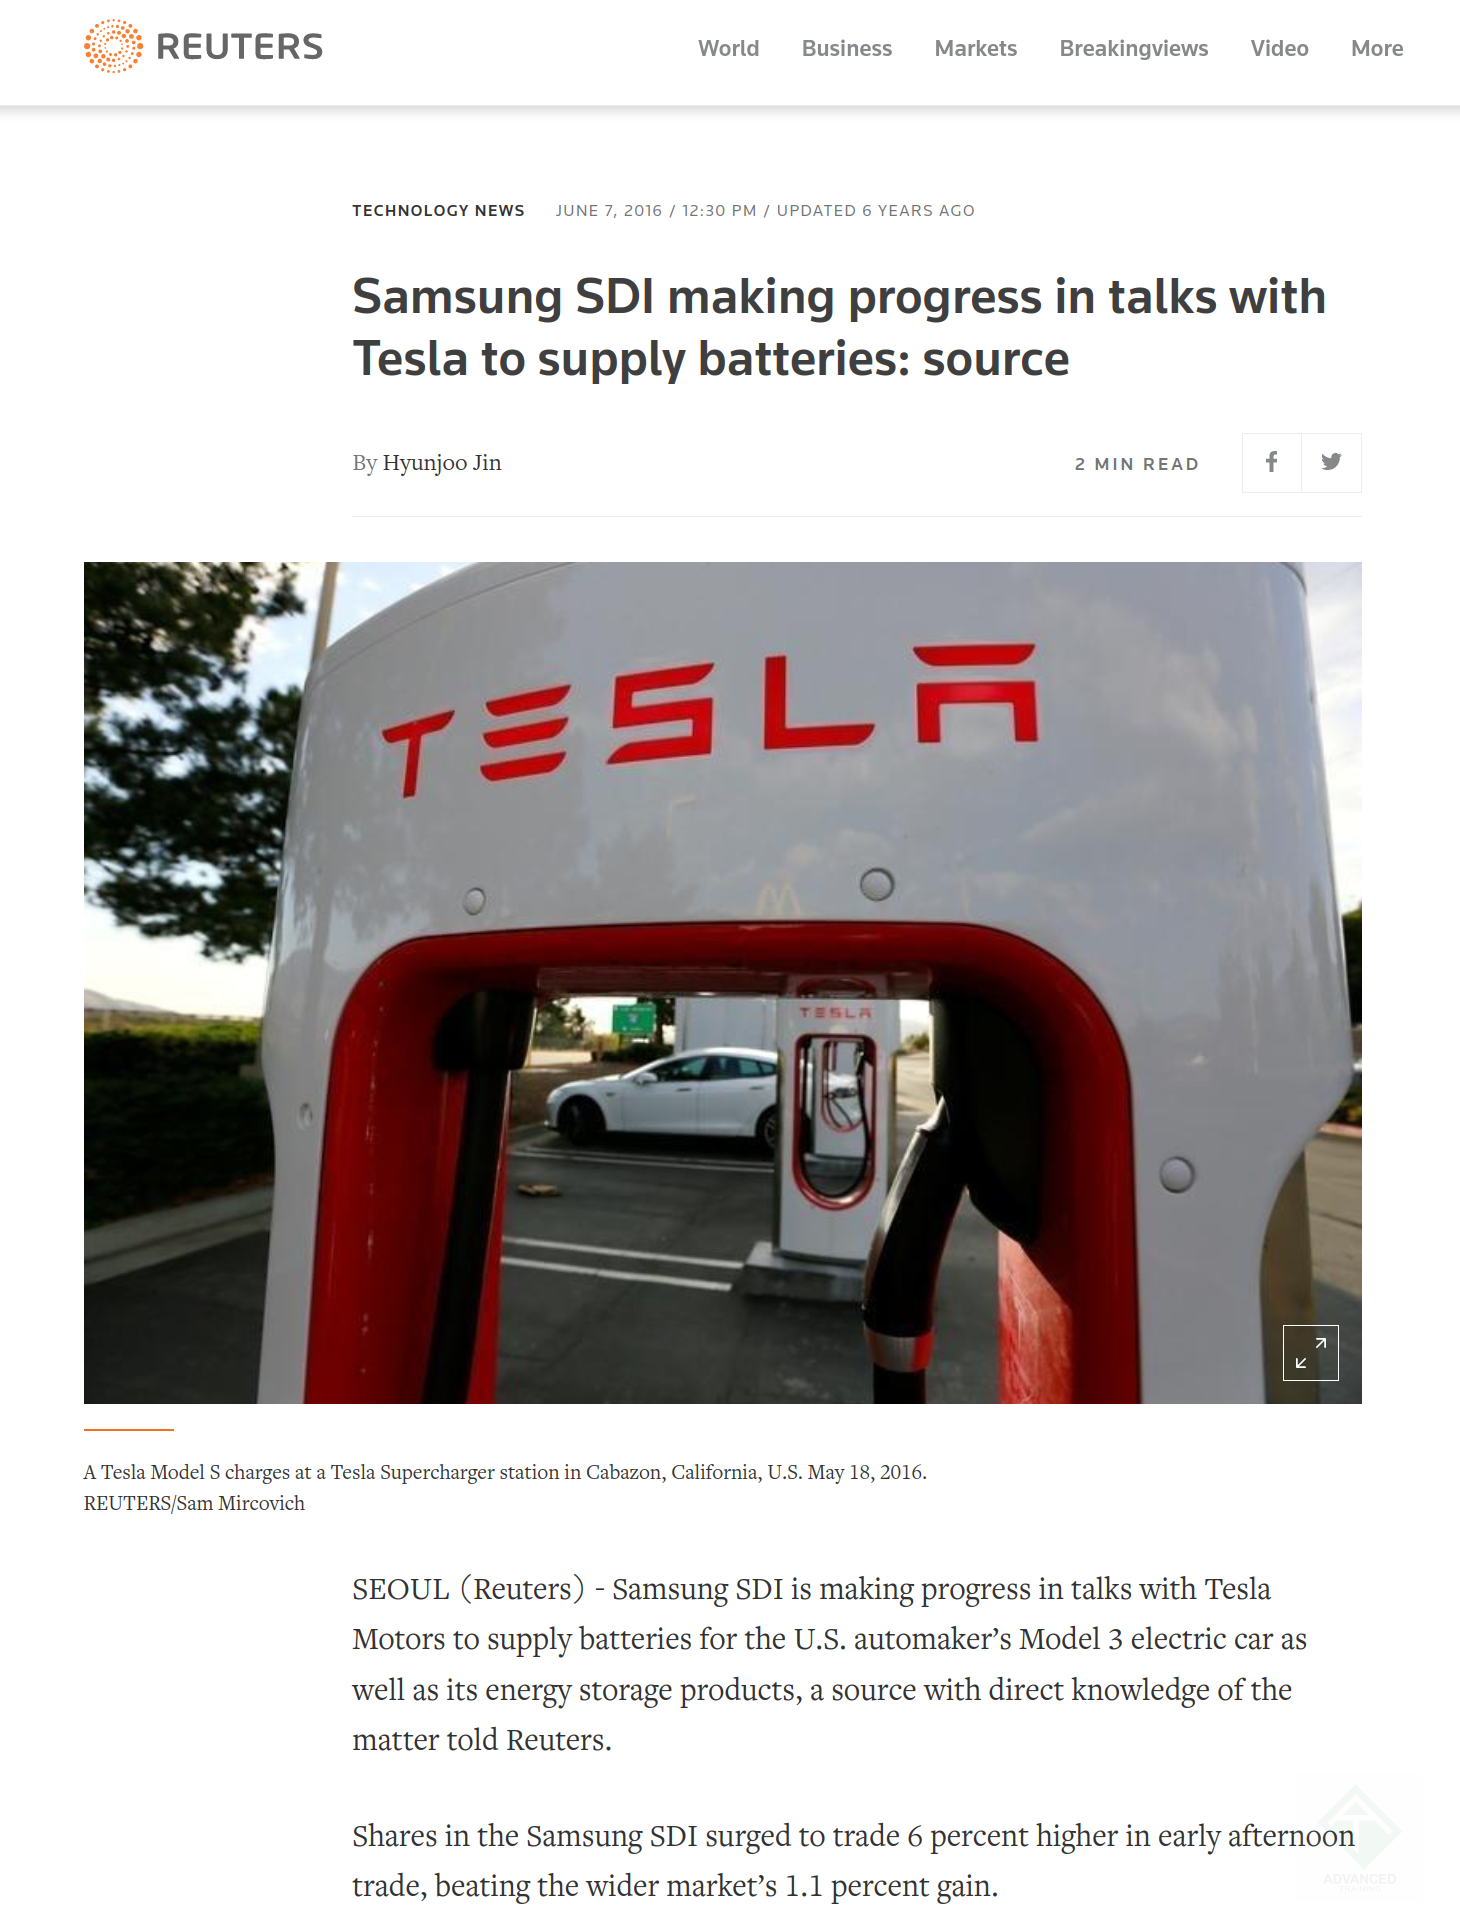 Gigadactory отлично работает и заваливает мир батарейками - настолько, что Tesla лишь увеличивает закупки у Samsung